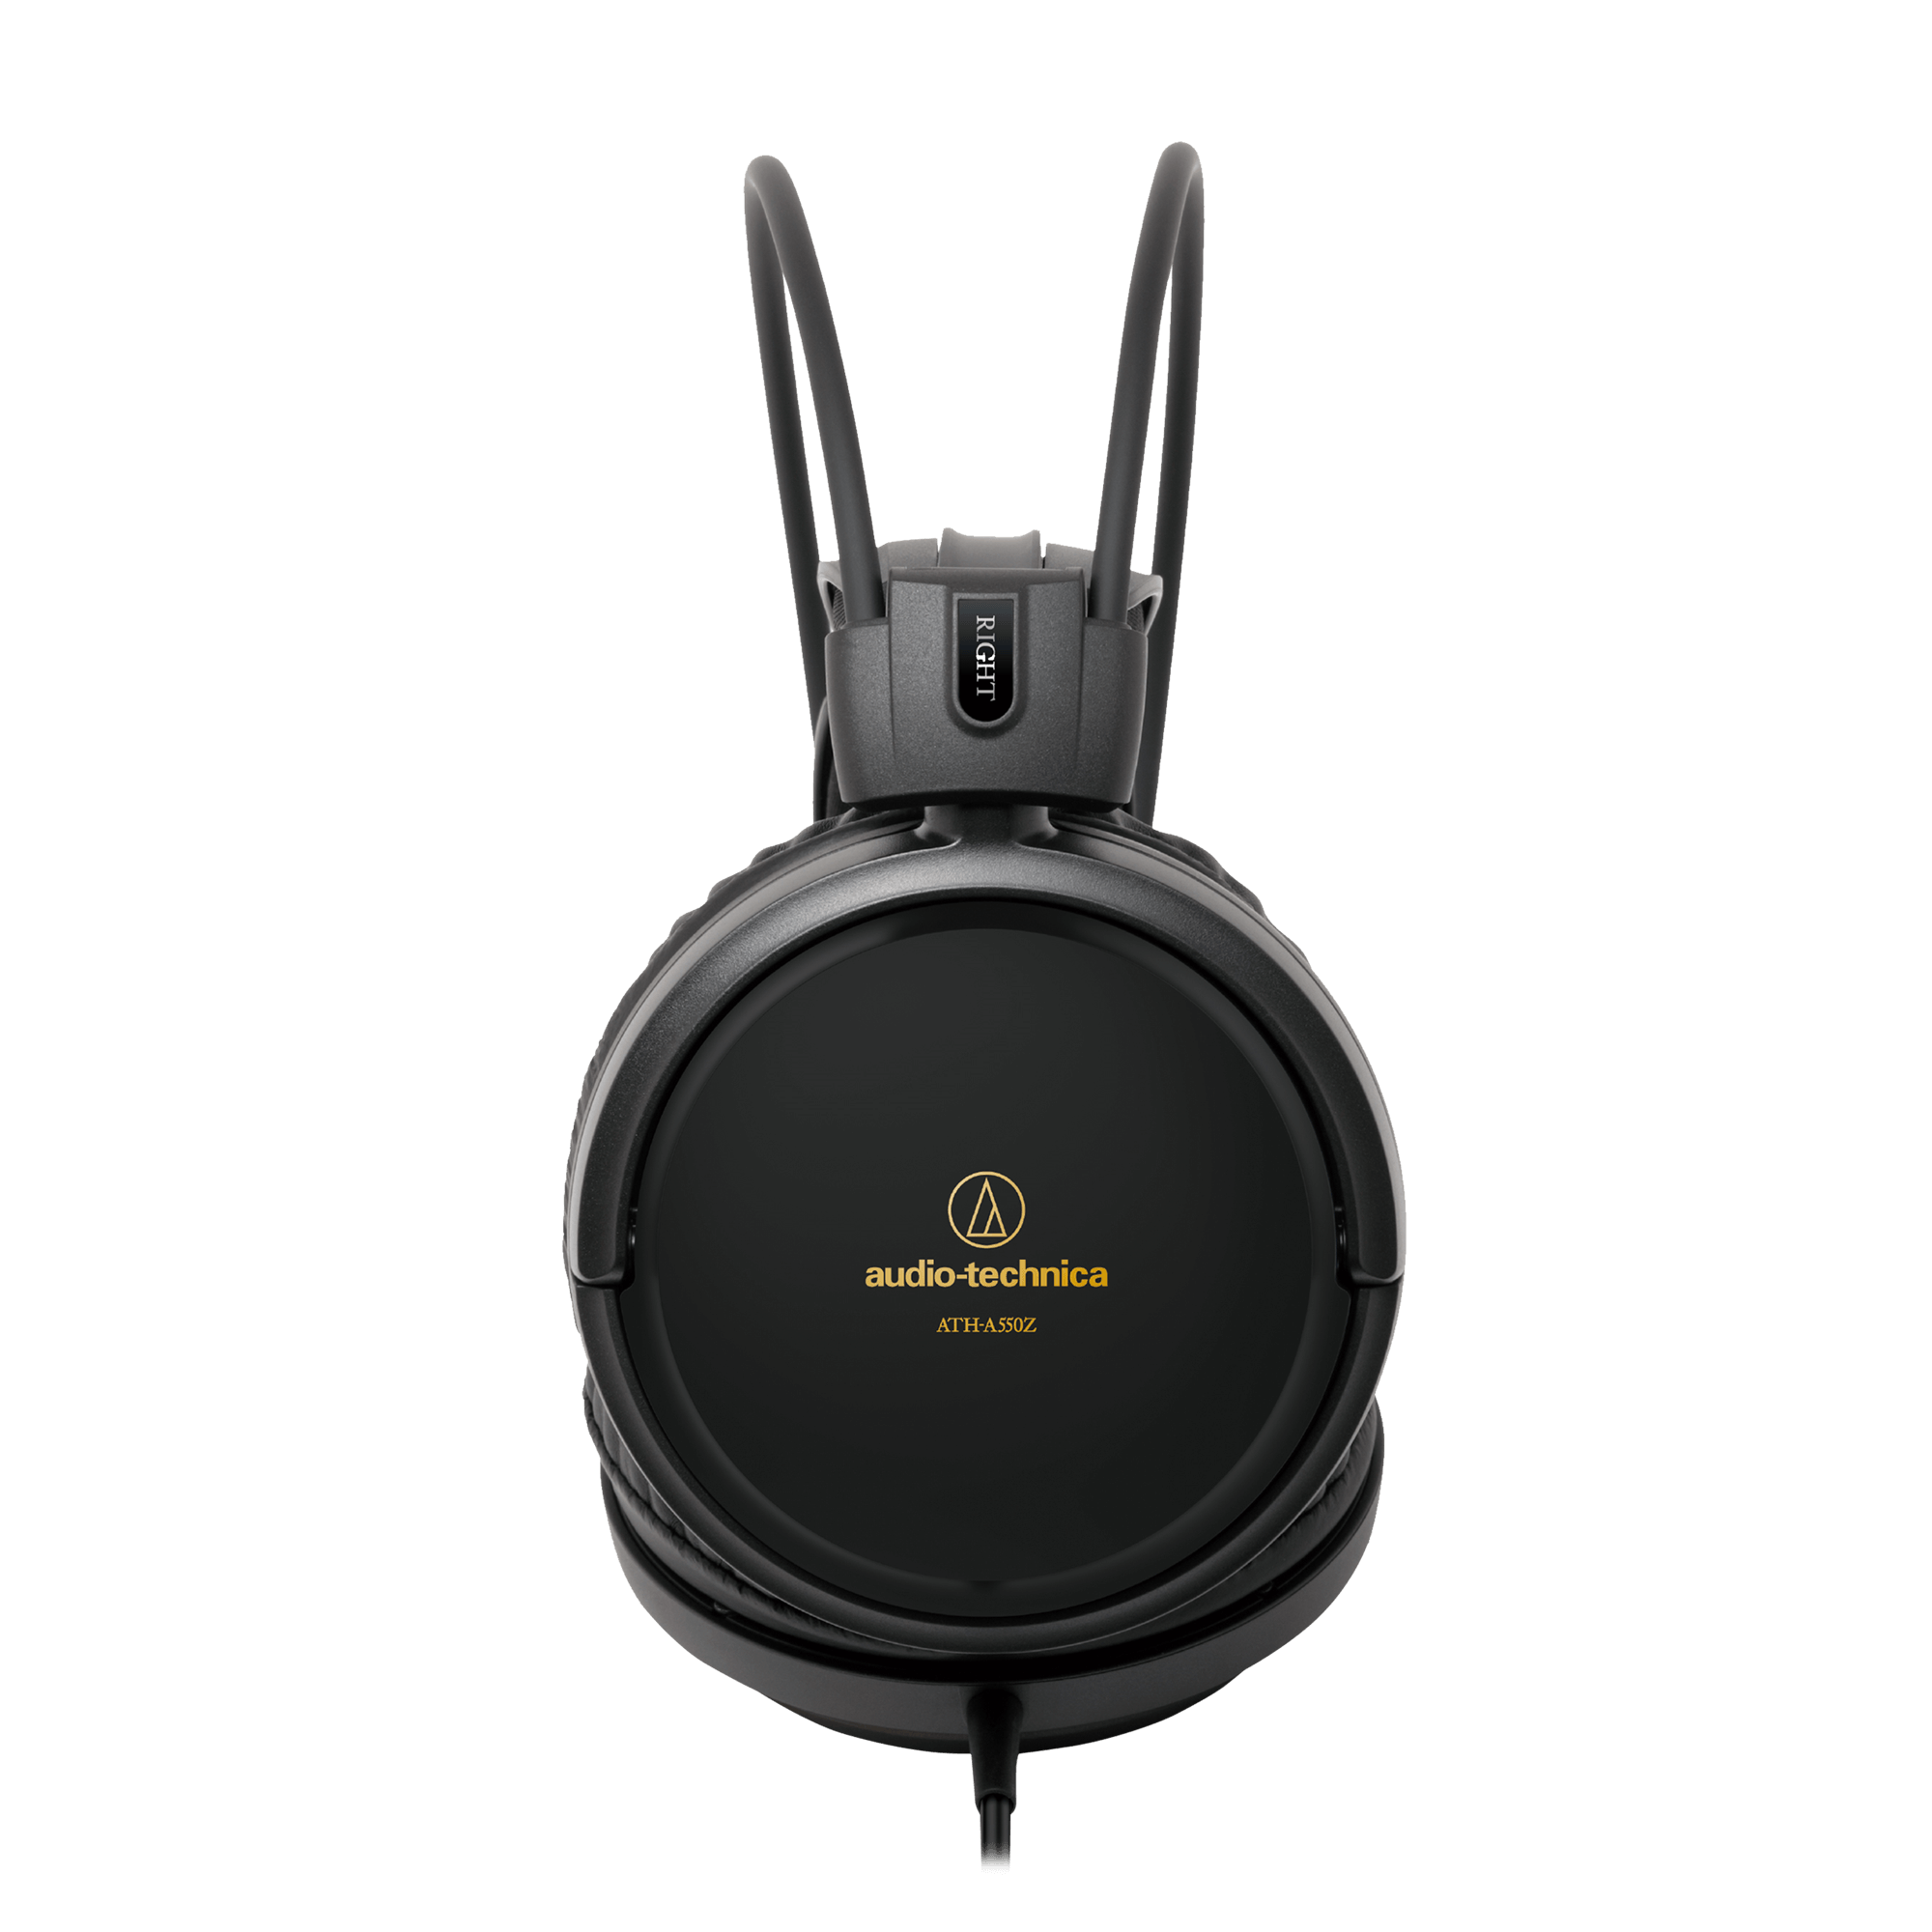 audio−technica ATH-A500X オーディオテクニカ - ヘッドフォン